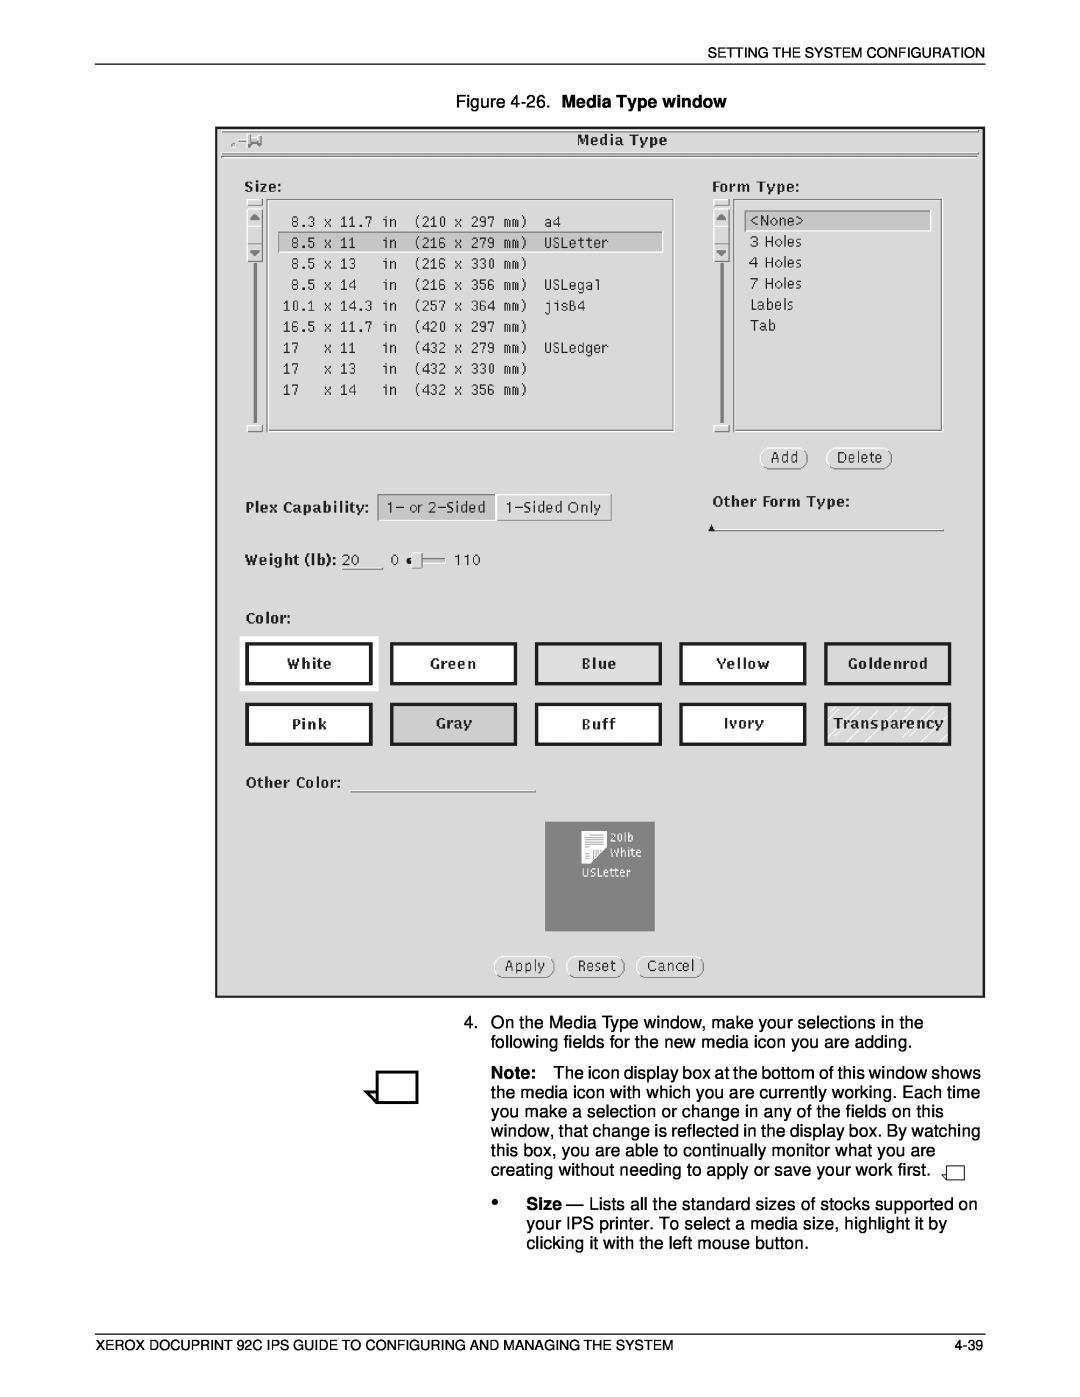 Xerox 92C IPS manual 26. Media Type window 